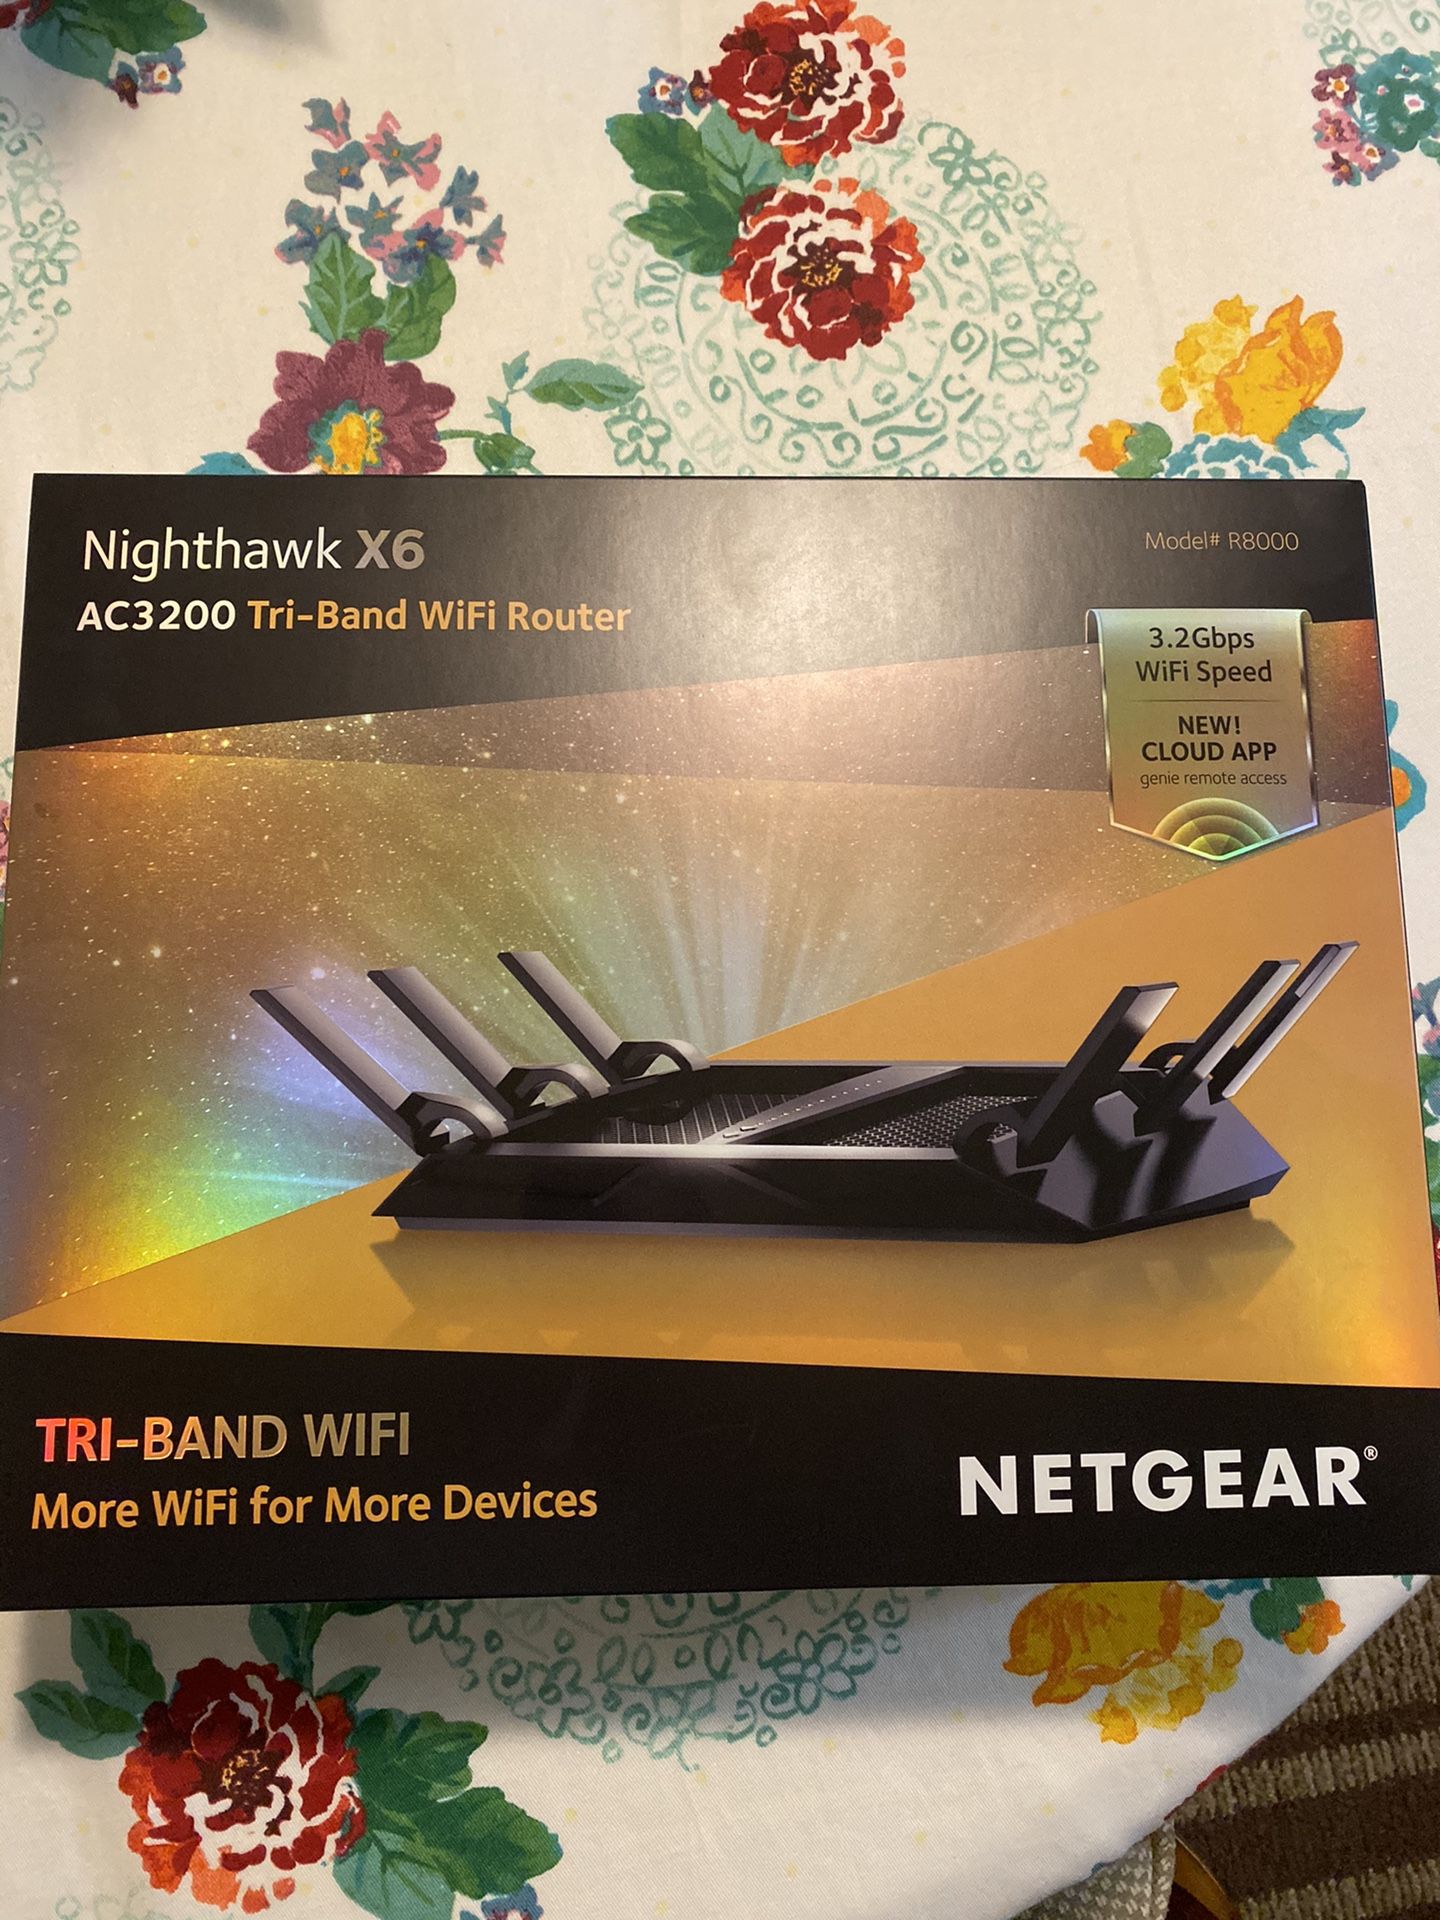 Nighthawk Netgear WiFi Wireless Router